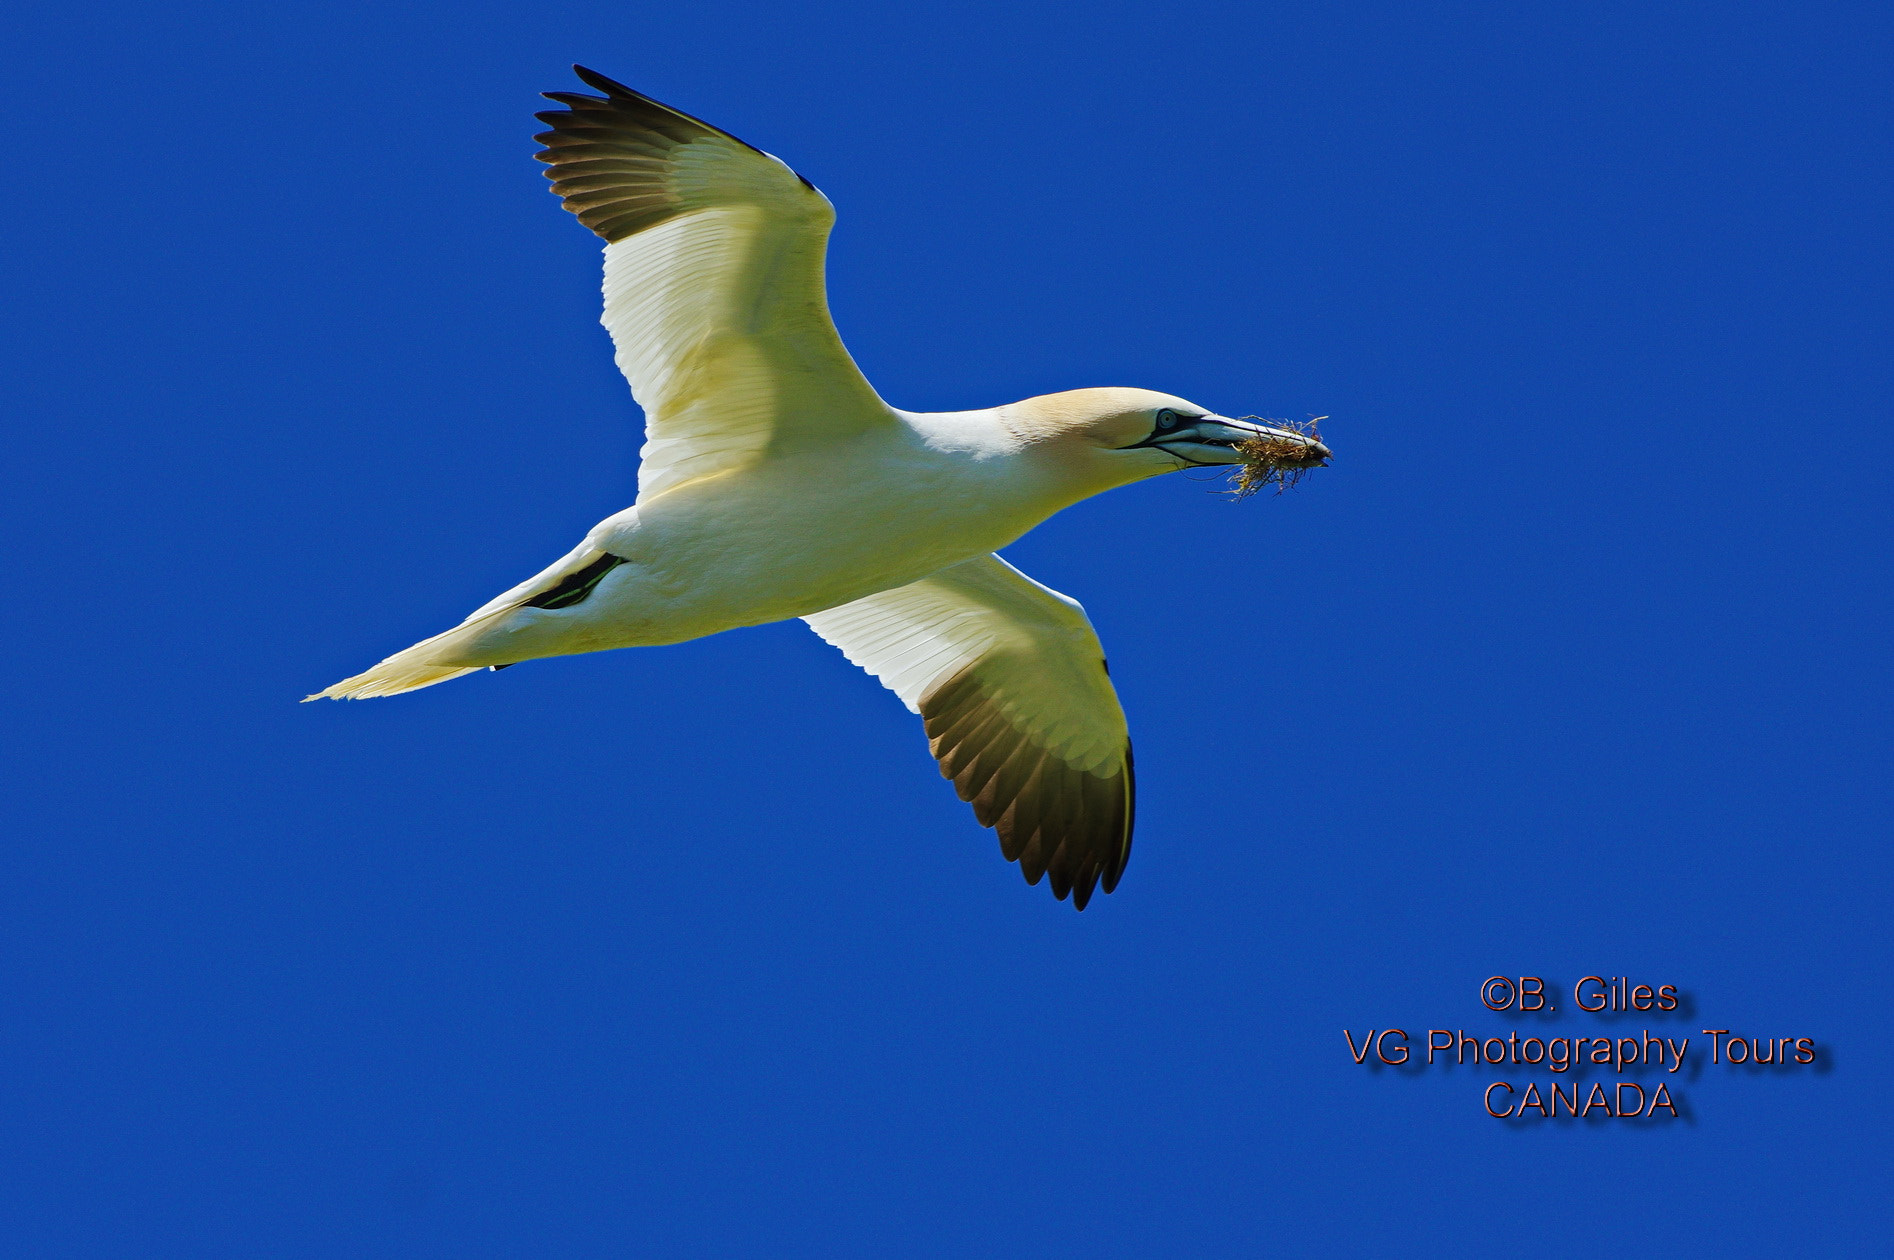 Pentax K-3 sample photo. Summer gannet photography